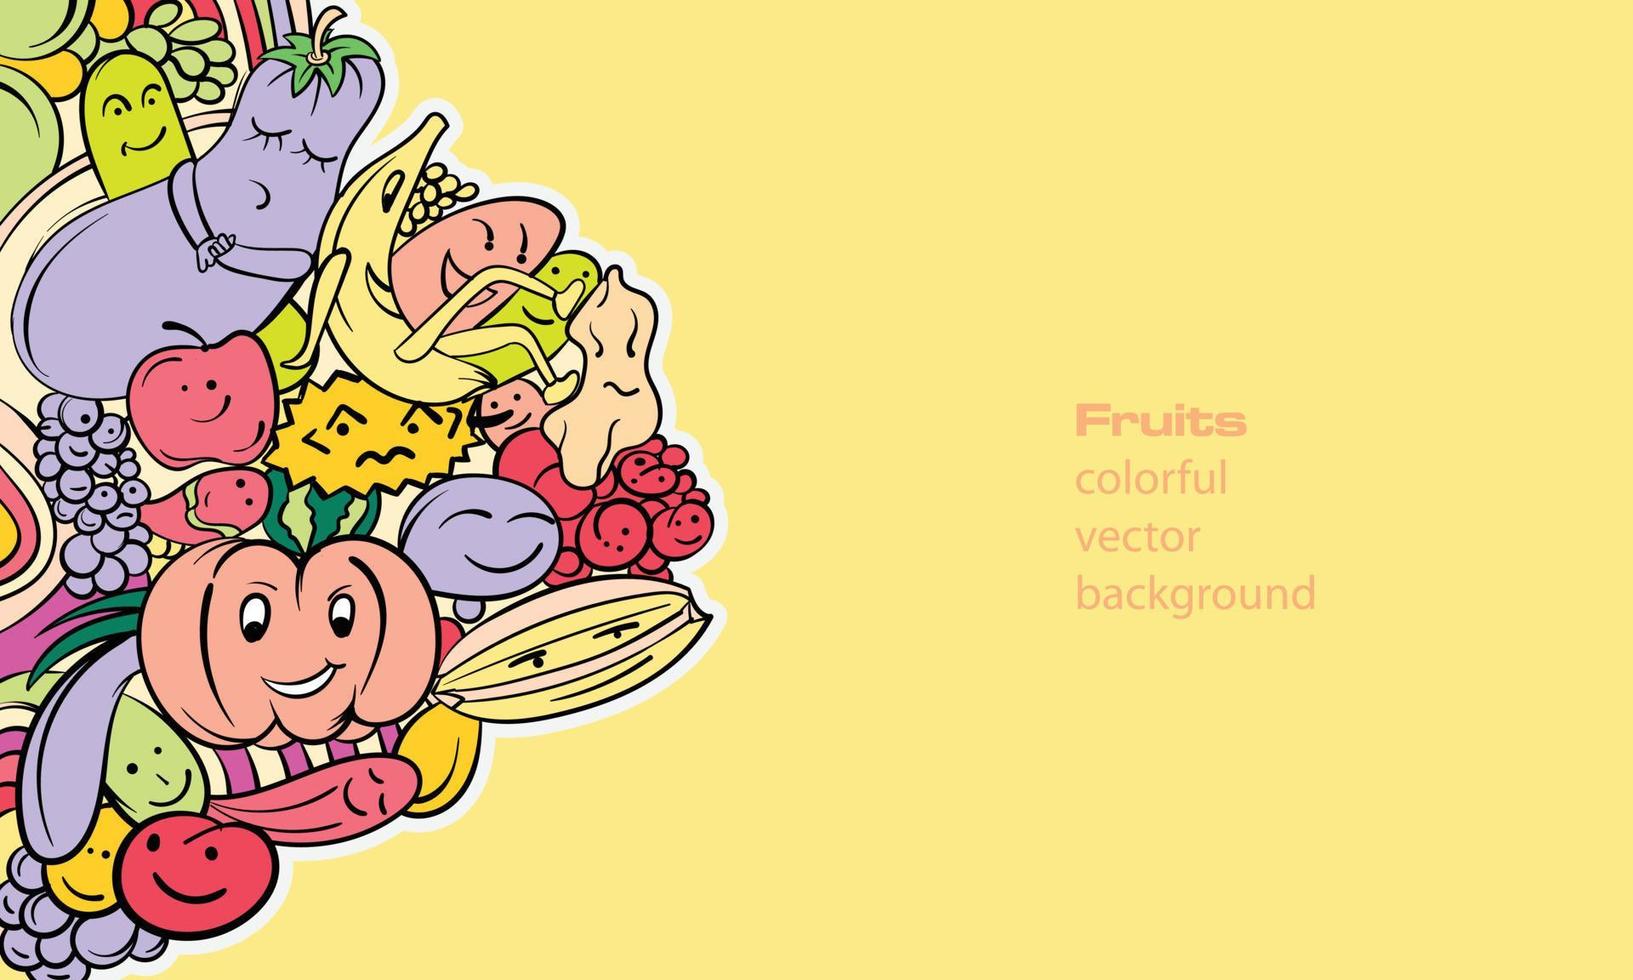 abstract kleurrijk fruit vector illustratie